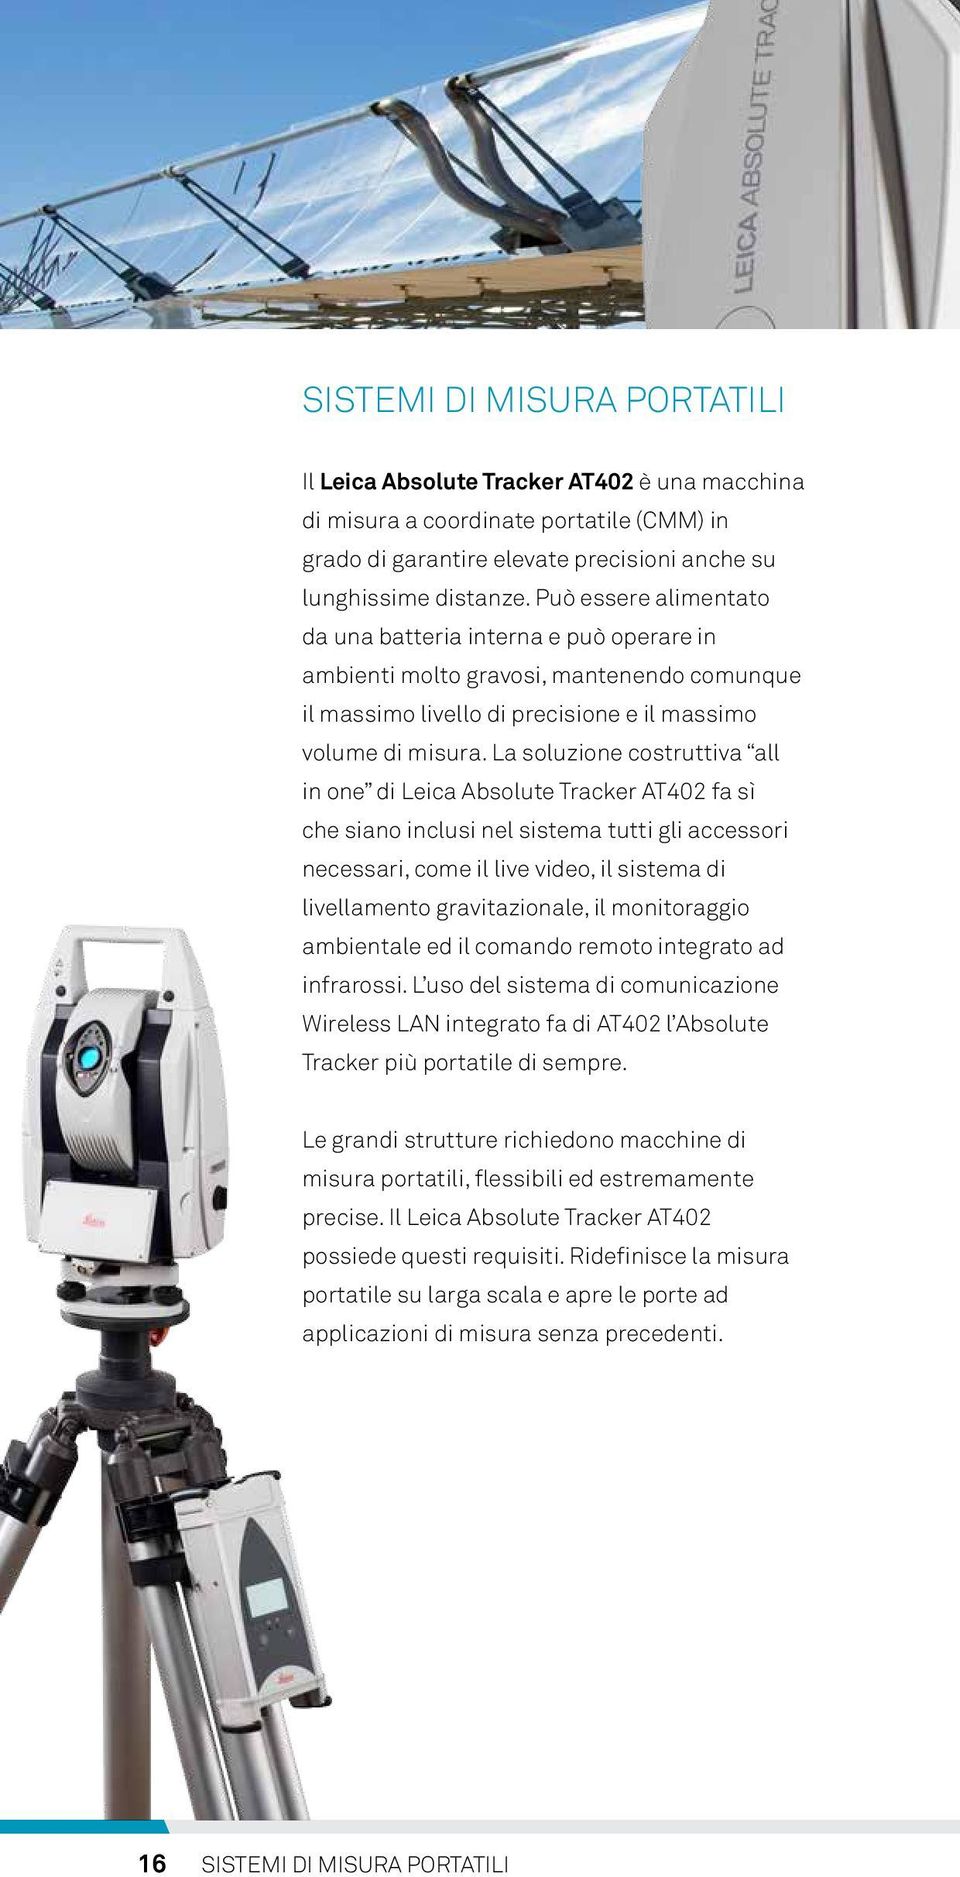 La soluzione costruttiva all in one di Leica Absolute Tracker AT402 fa sì che siano inclusi nel sistema tutti gli accessori necessari, come il live video, il sistema di livellamento gravitazionale,